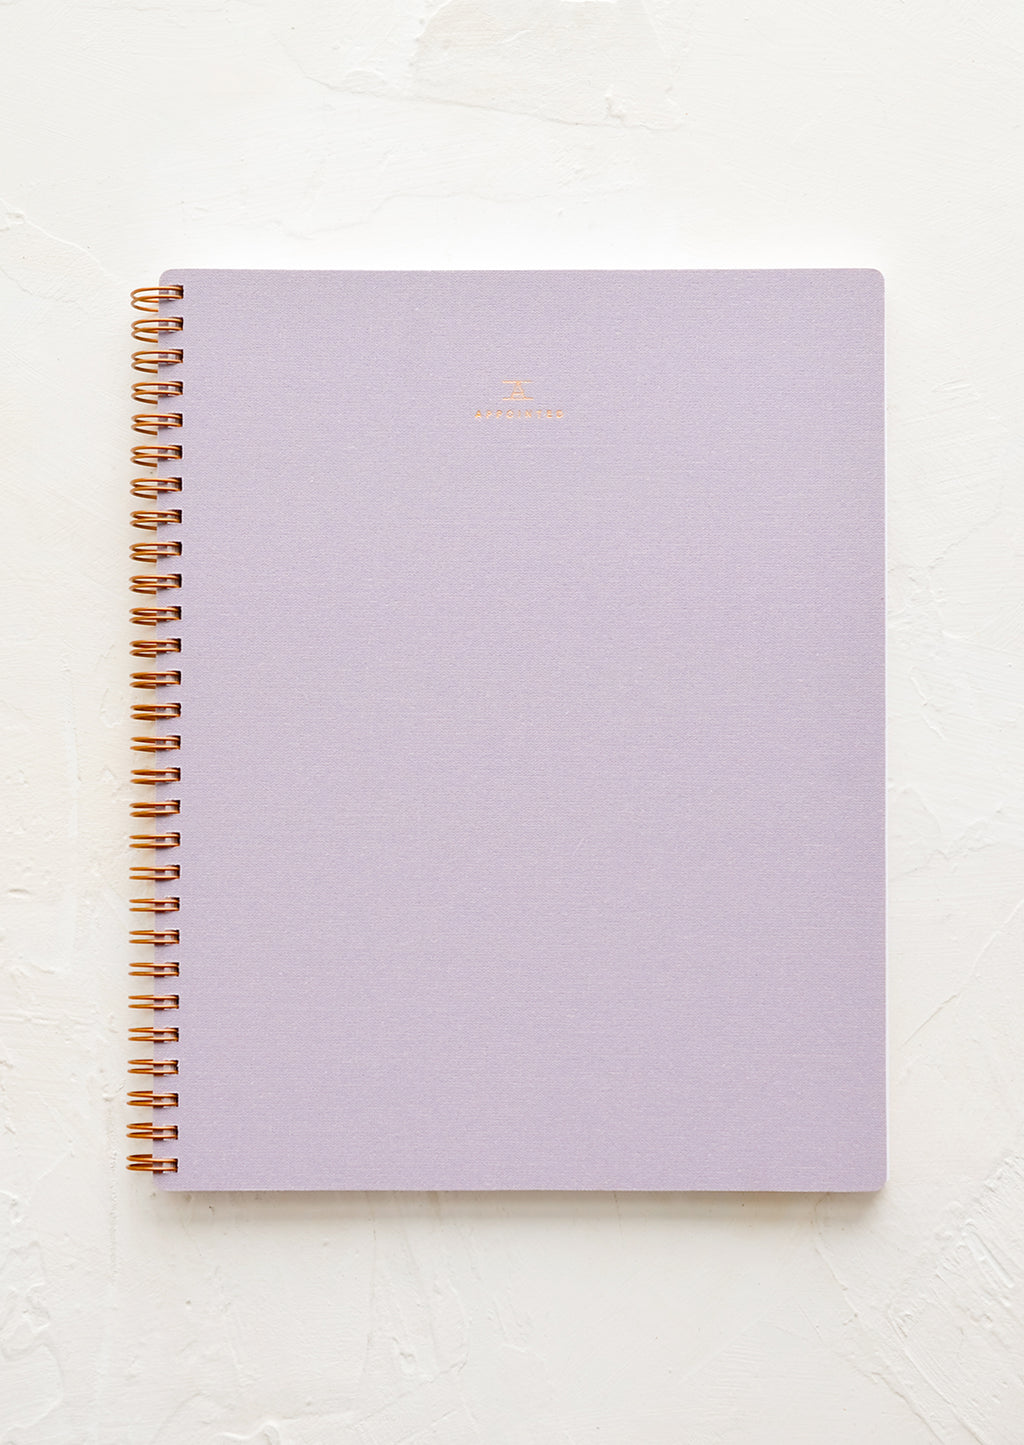 Lavender: A spiral bound notebook in purple.